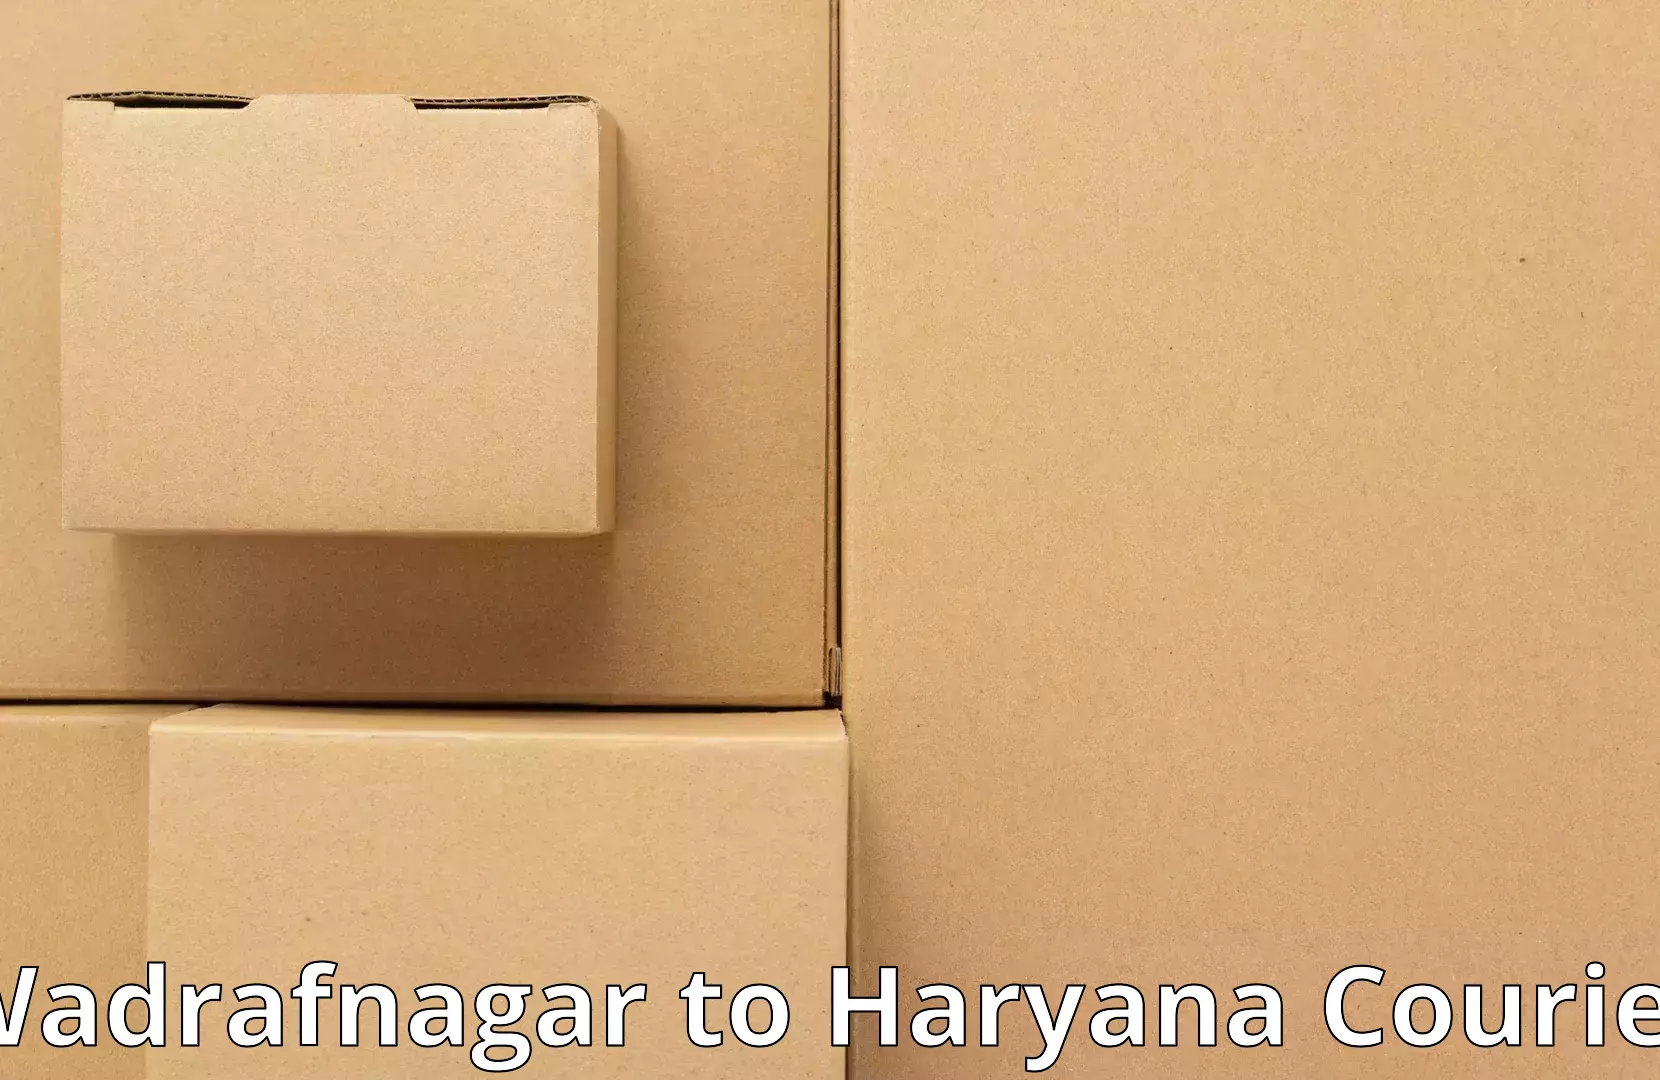 Affordable relocation solutions Wadrafnagar to Jhajjar